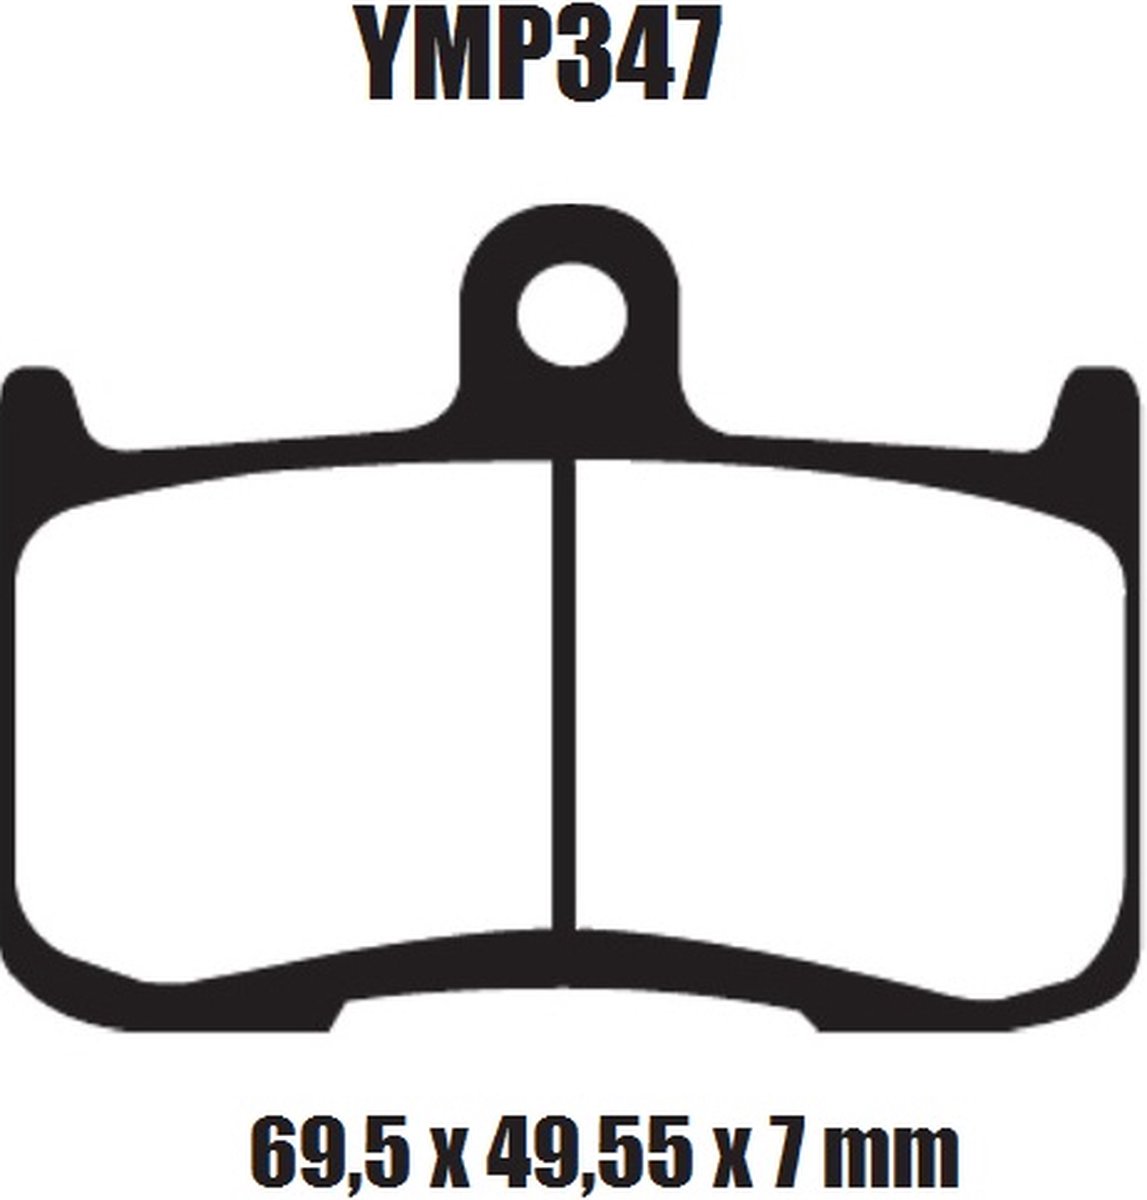 Motor remblokken voorzijde Triumph Street Triple 675 R 2009 - 2015 675R YMP347 remblok rem voor